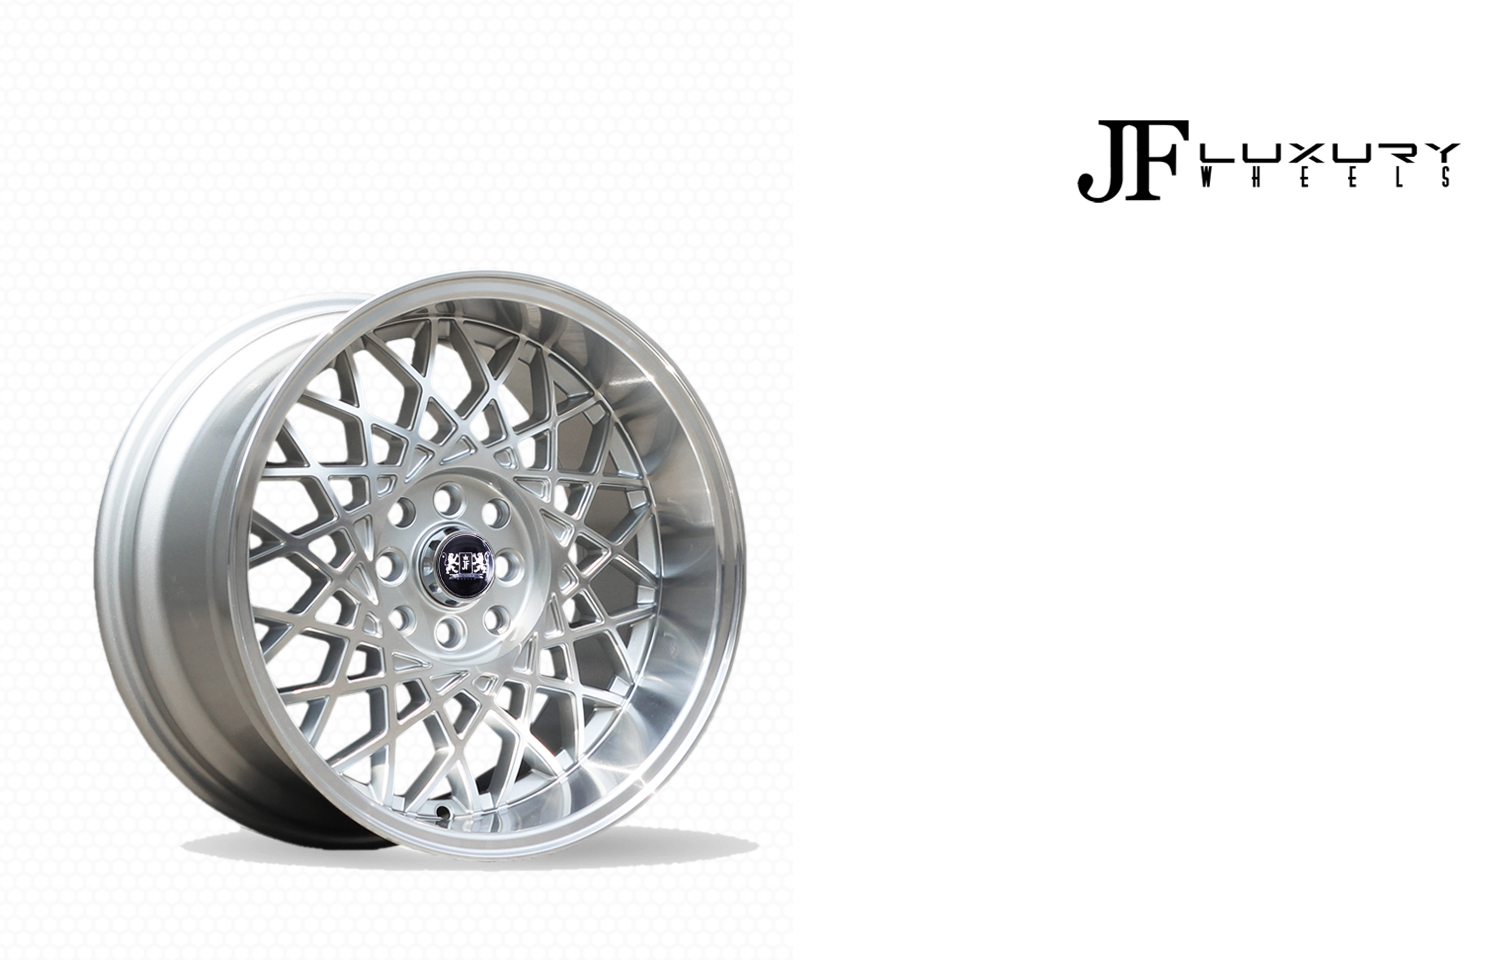 KOBE - JF Luxury wheels